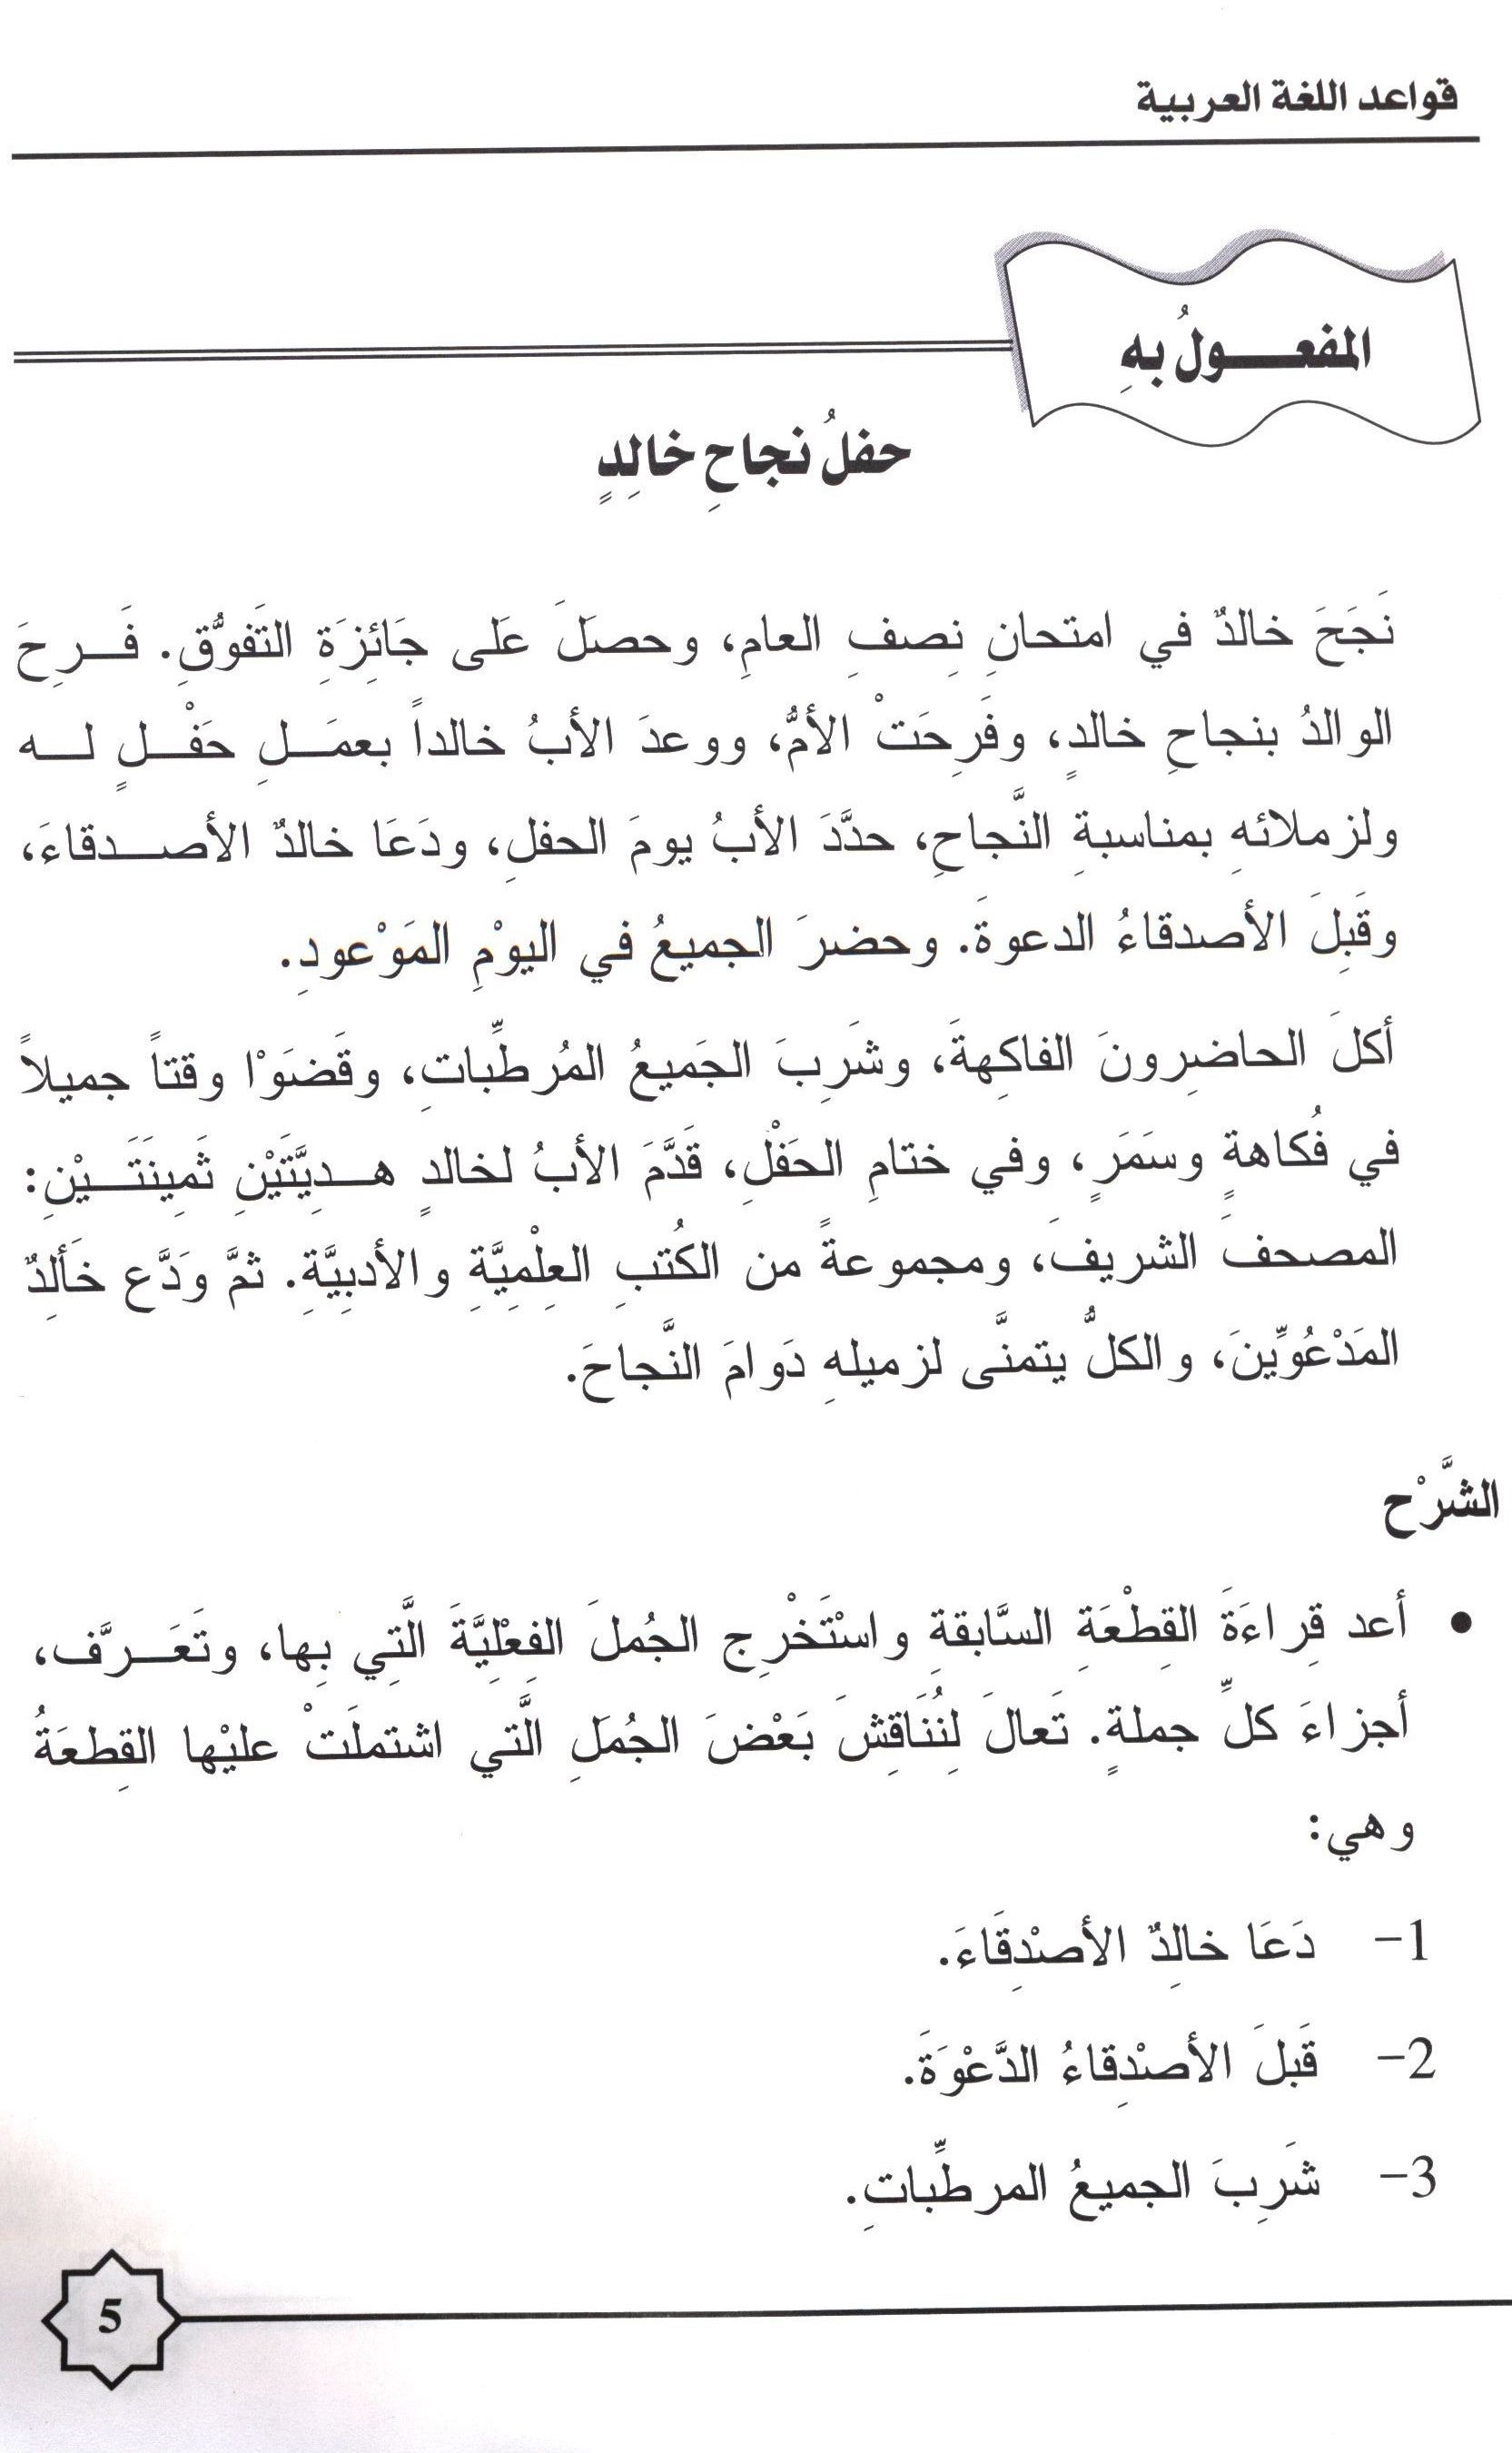 Al-Rowad Arabic Grammar Level 2 Part 2 تدريبات في قواعد اللّغة العربيّة